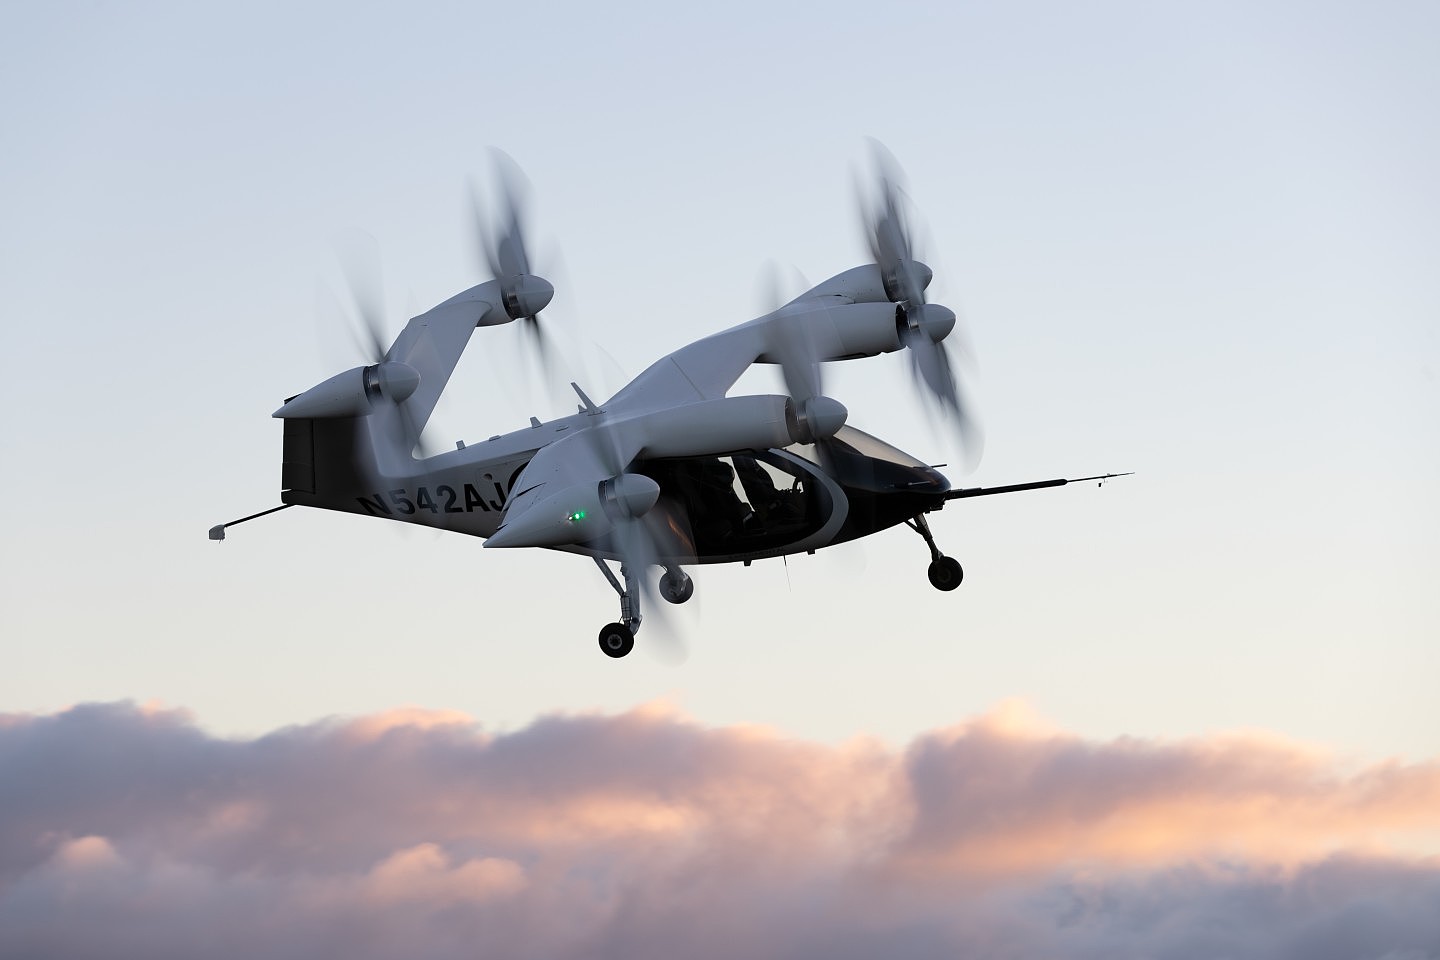 Joby发布eVTOL完整飞行轮廓视频并碳信用交易系统计划 - 2